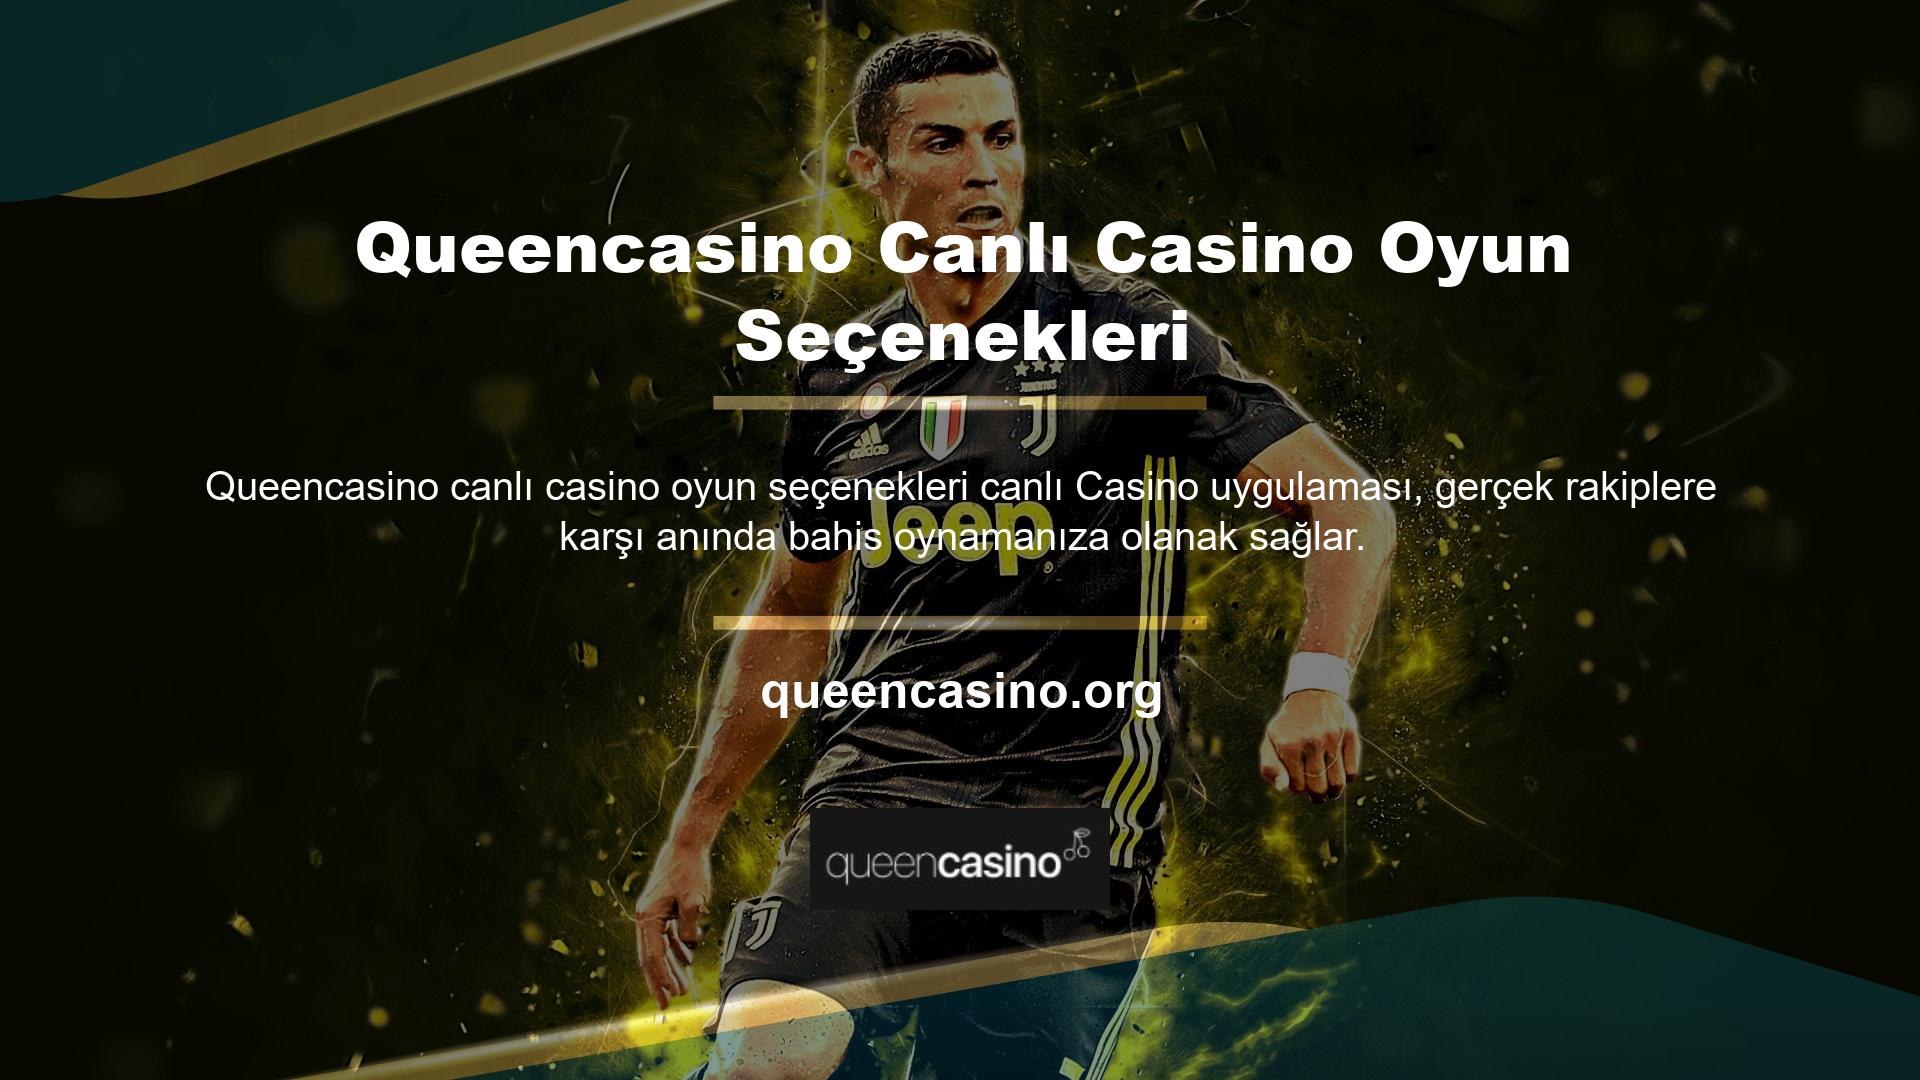 Queencasino canlı casino oyun seçenekleri arasında rulet, blackjack ve bakara yer almaktadır